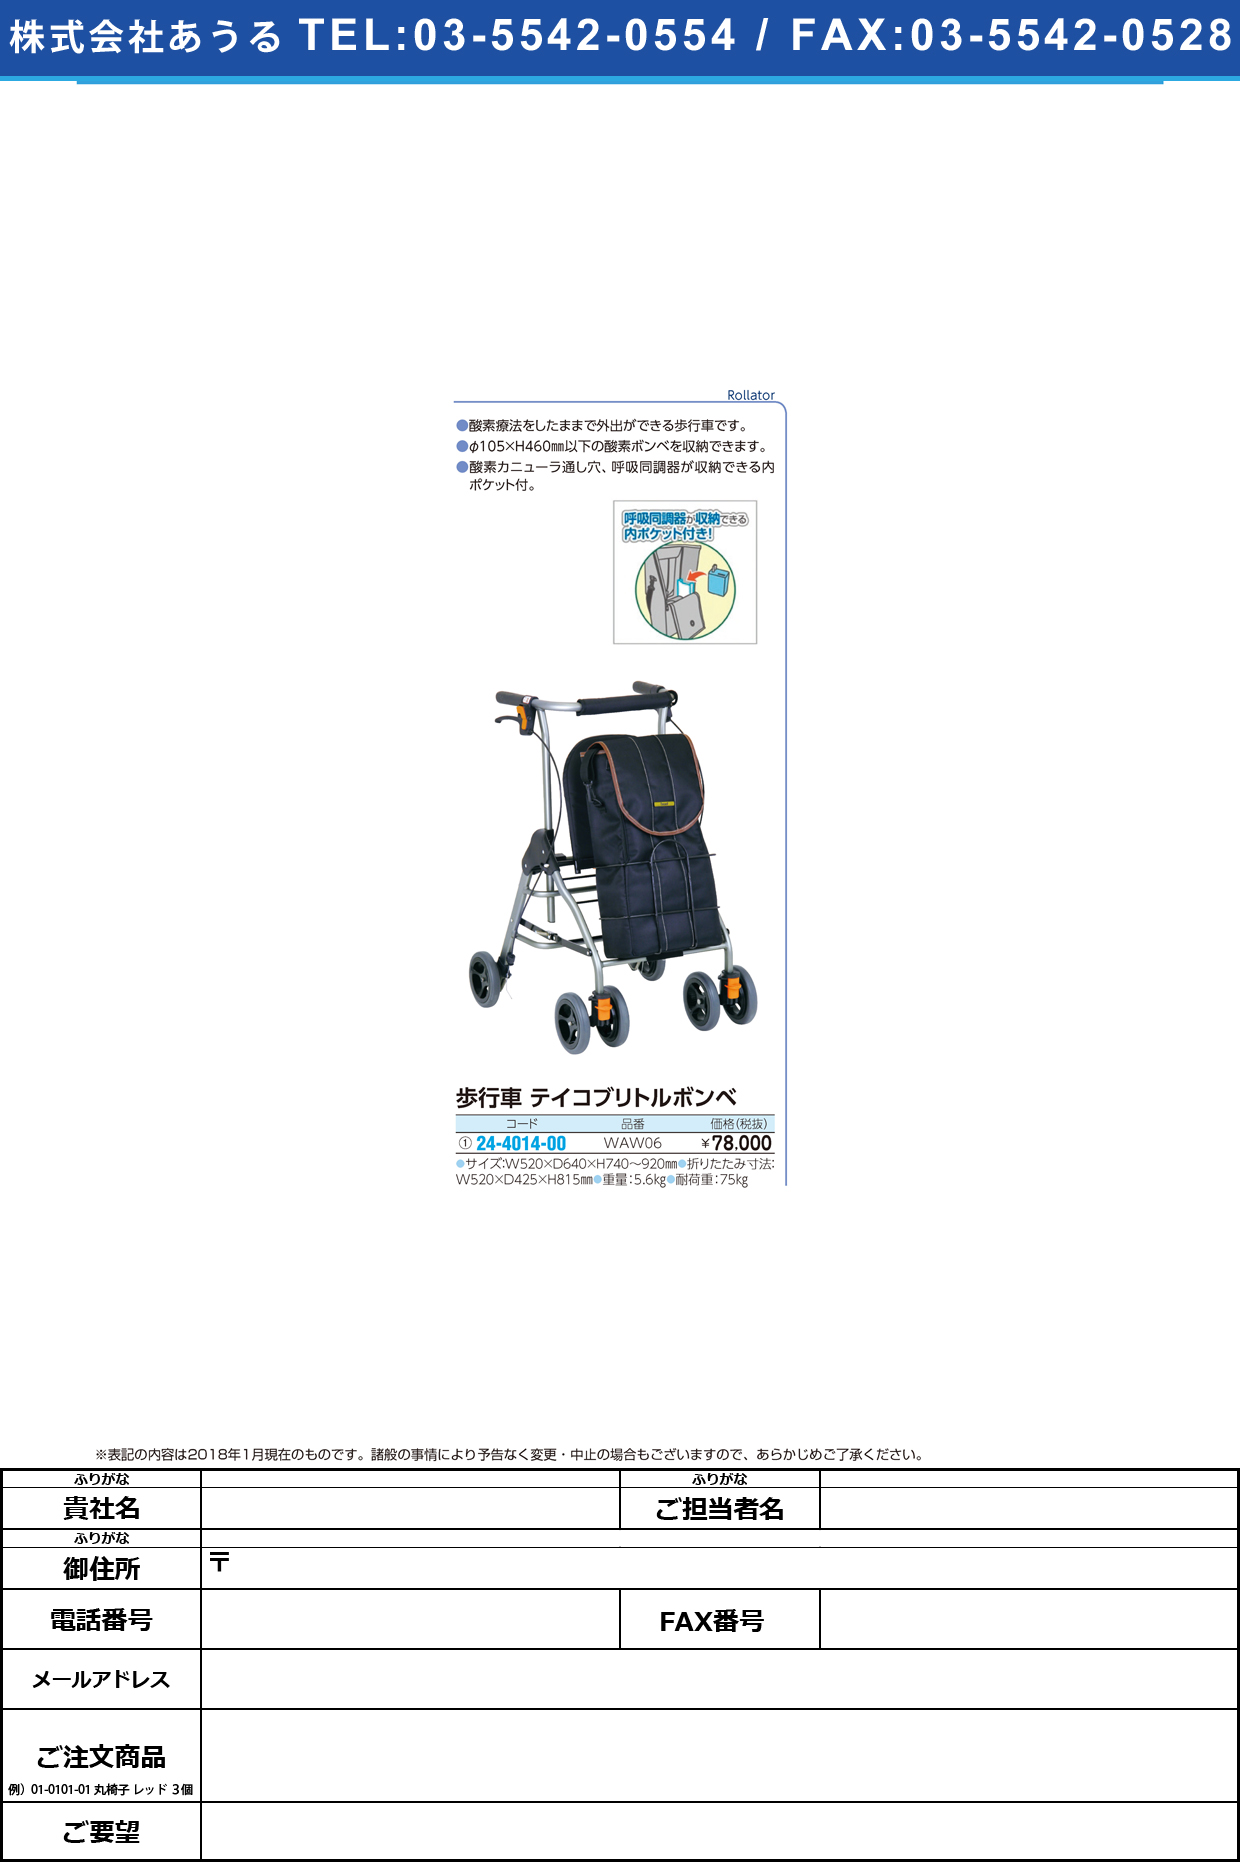 (24-4014-00)テイコブリトルボンベ WAW06 ﾃｲｺﾌﾞﾘﾄﾙﾎﾞﾝﾍﾞ【1台単位】【2018年カタログ商品】